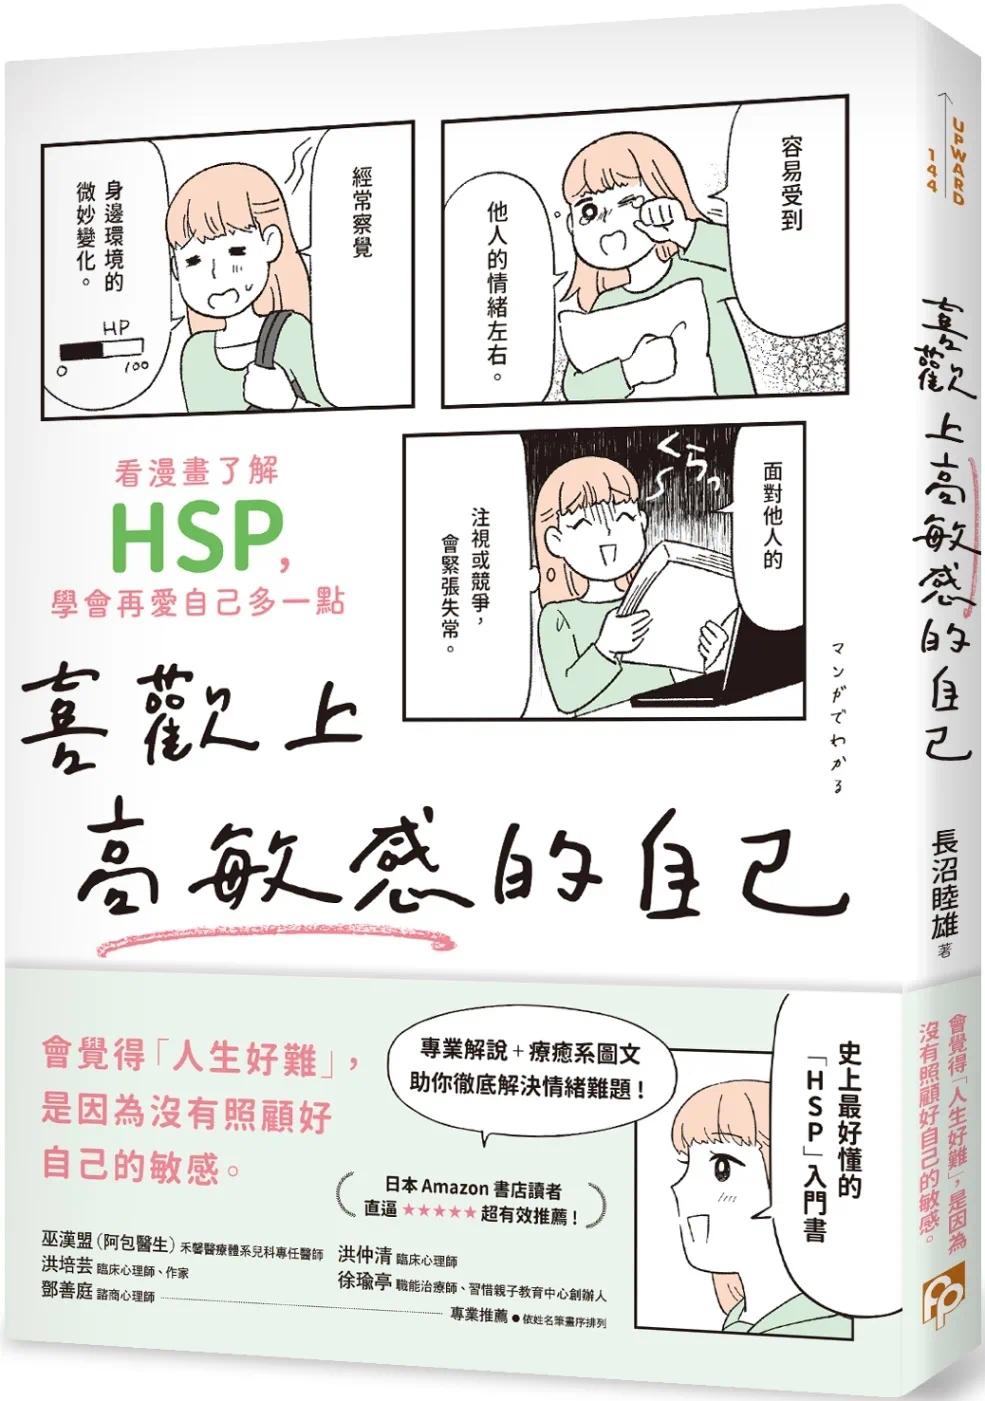 预售 长沼睦雄 喜欢上高敏感的自己：看漫画了解HSP，学会再爱自己多一点 平安文化